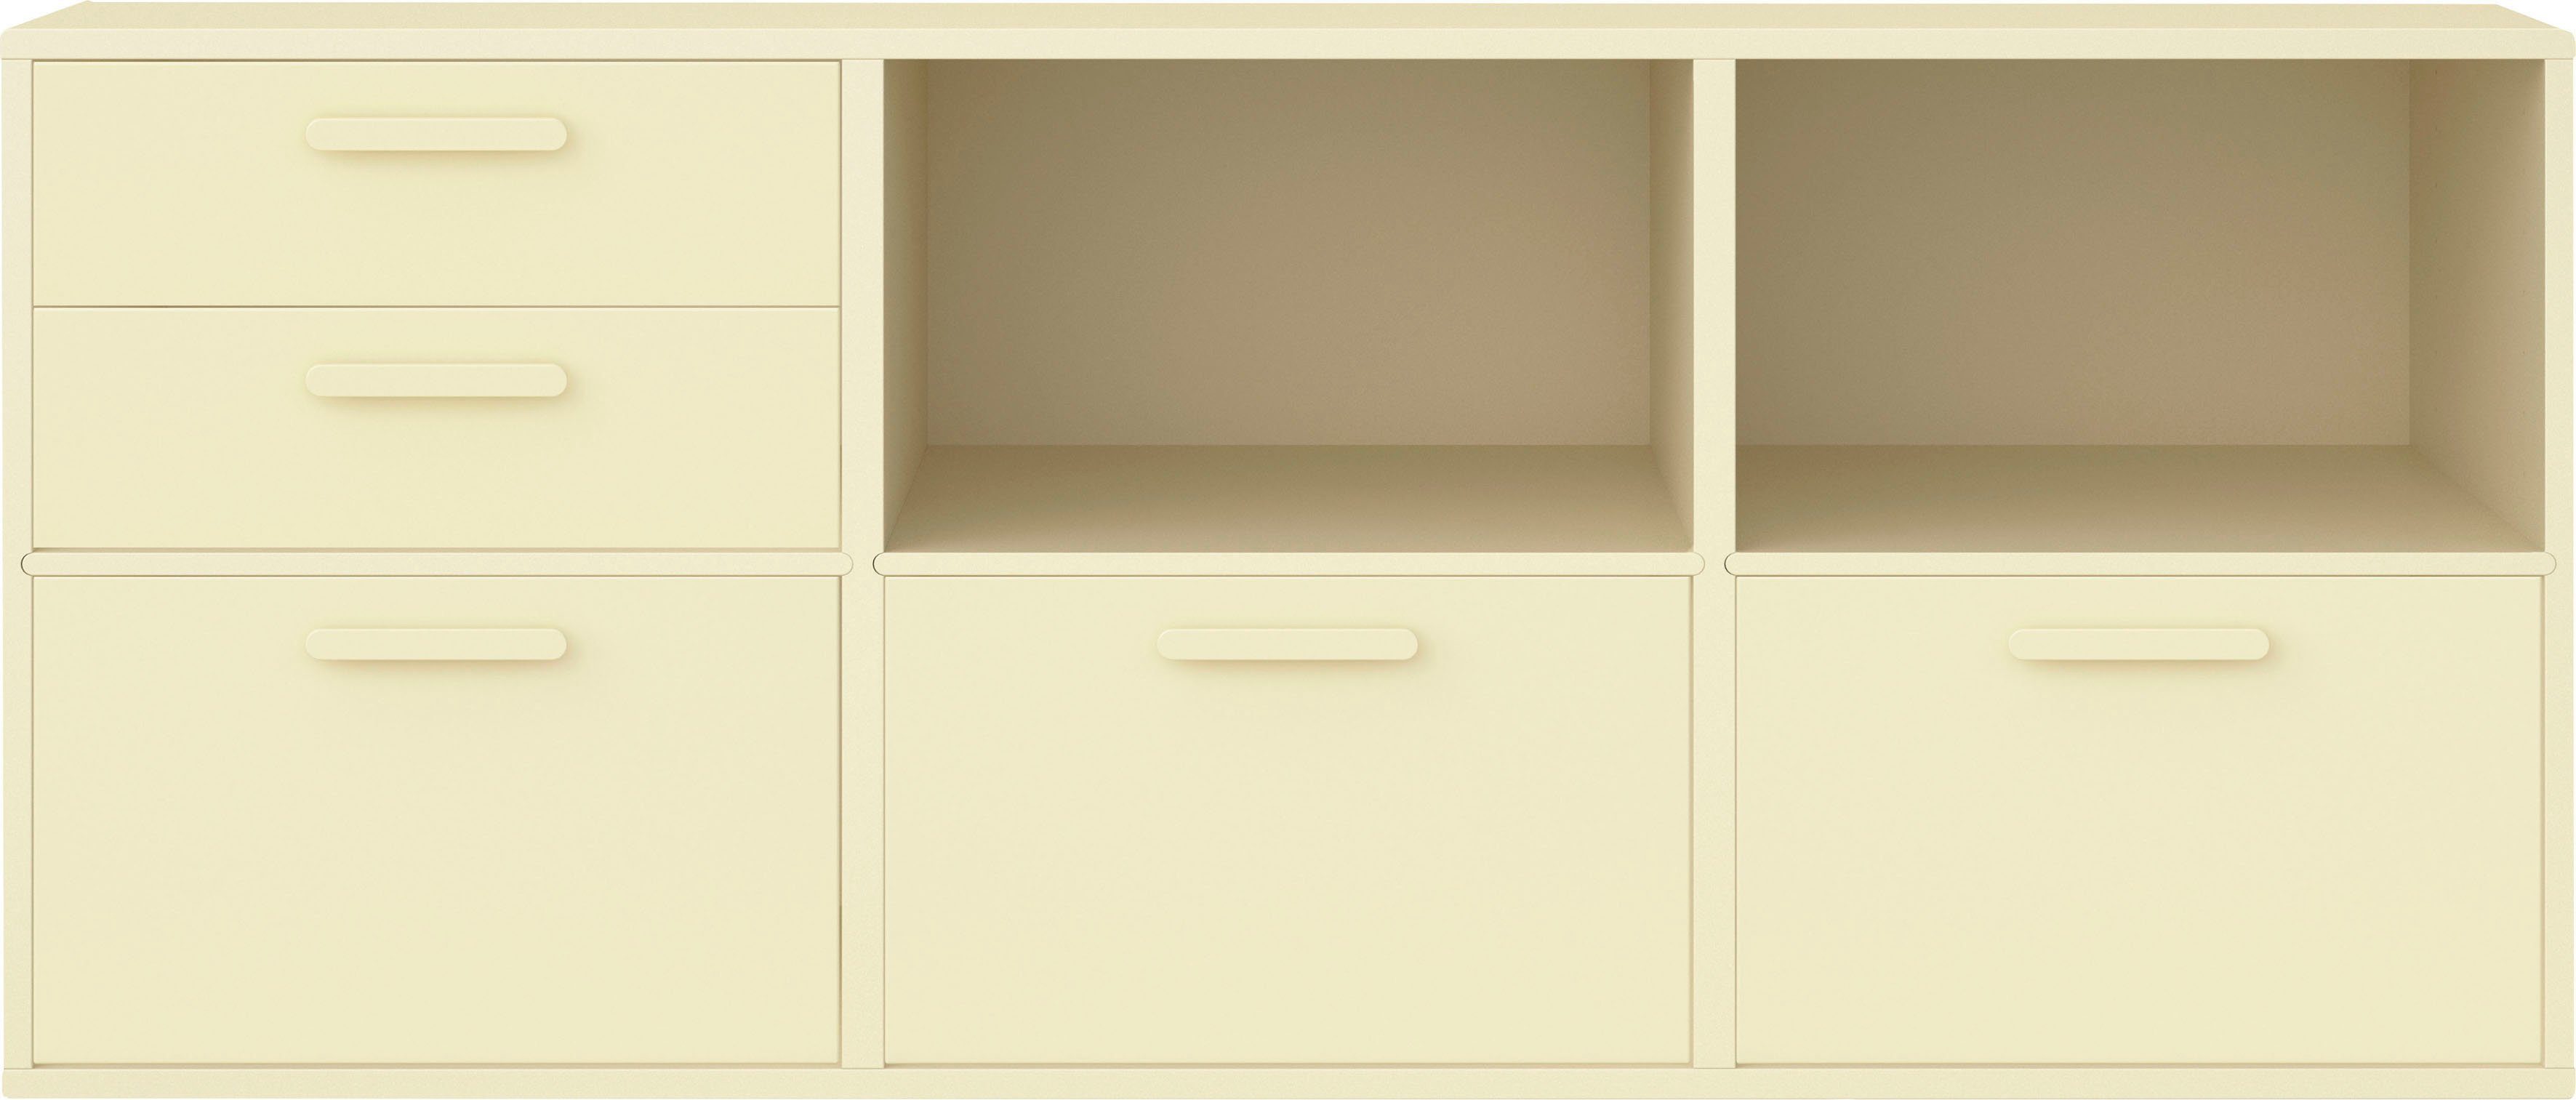 Hammel Furniture Sideboard Keep by Hammel, mit 2 Schubladen und 3 Türen, Breite 133,8 cm, flexible Möbelserie